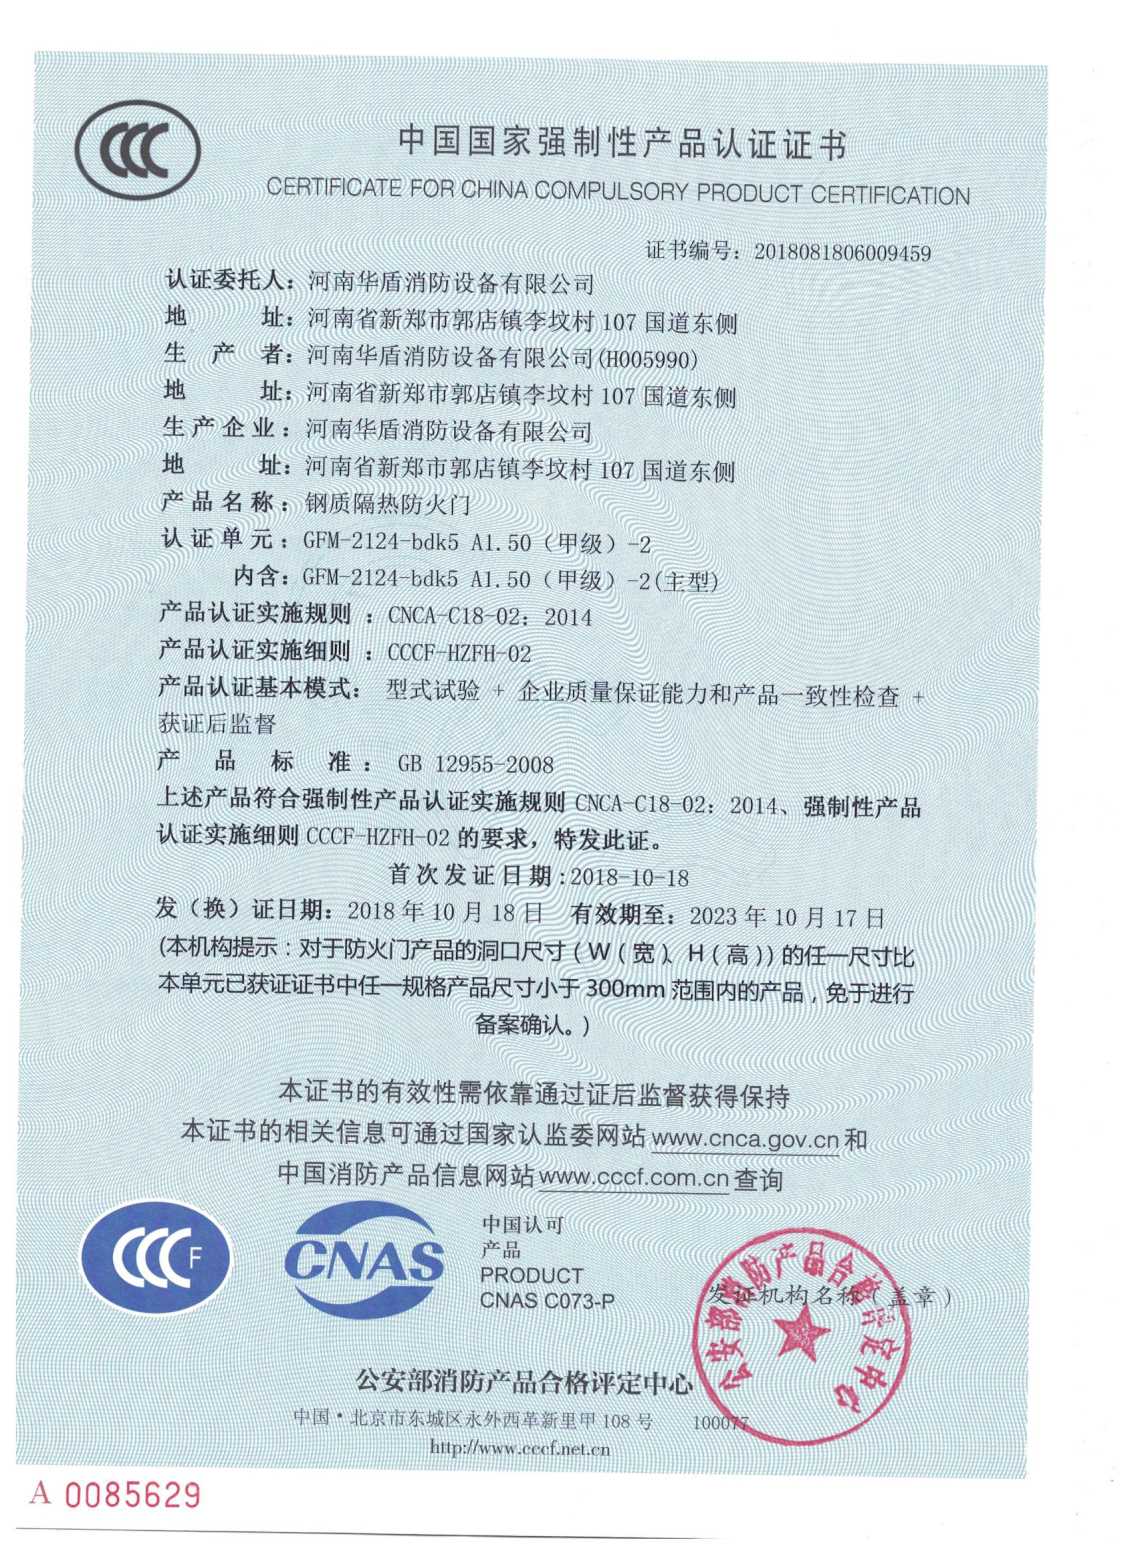 洛阳GFM-2124-bdk5A1.50（甲级）-2-3C证书